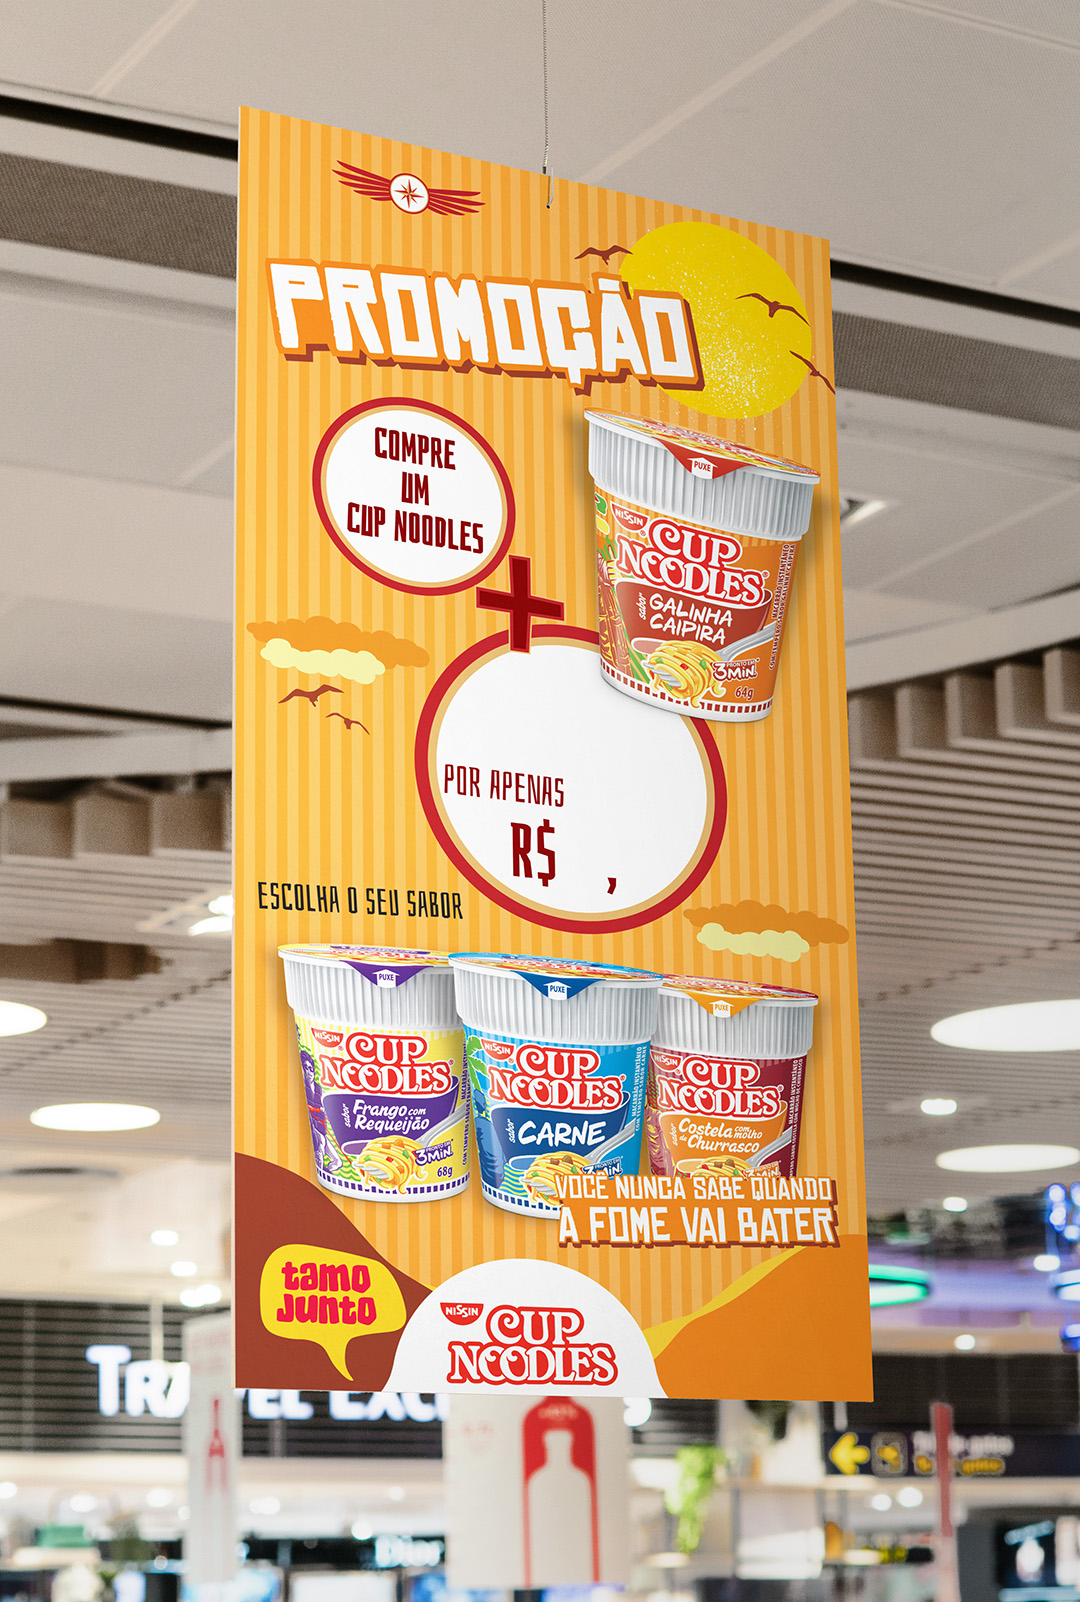 Imagem de poster promocional de supermercado com comunicação Cup Noodles Nissin.